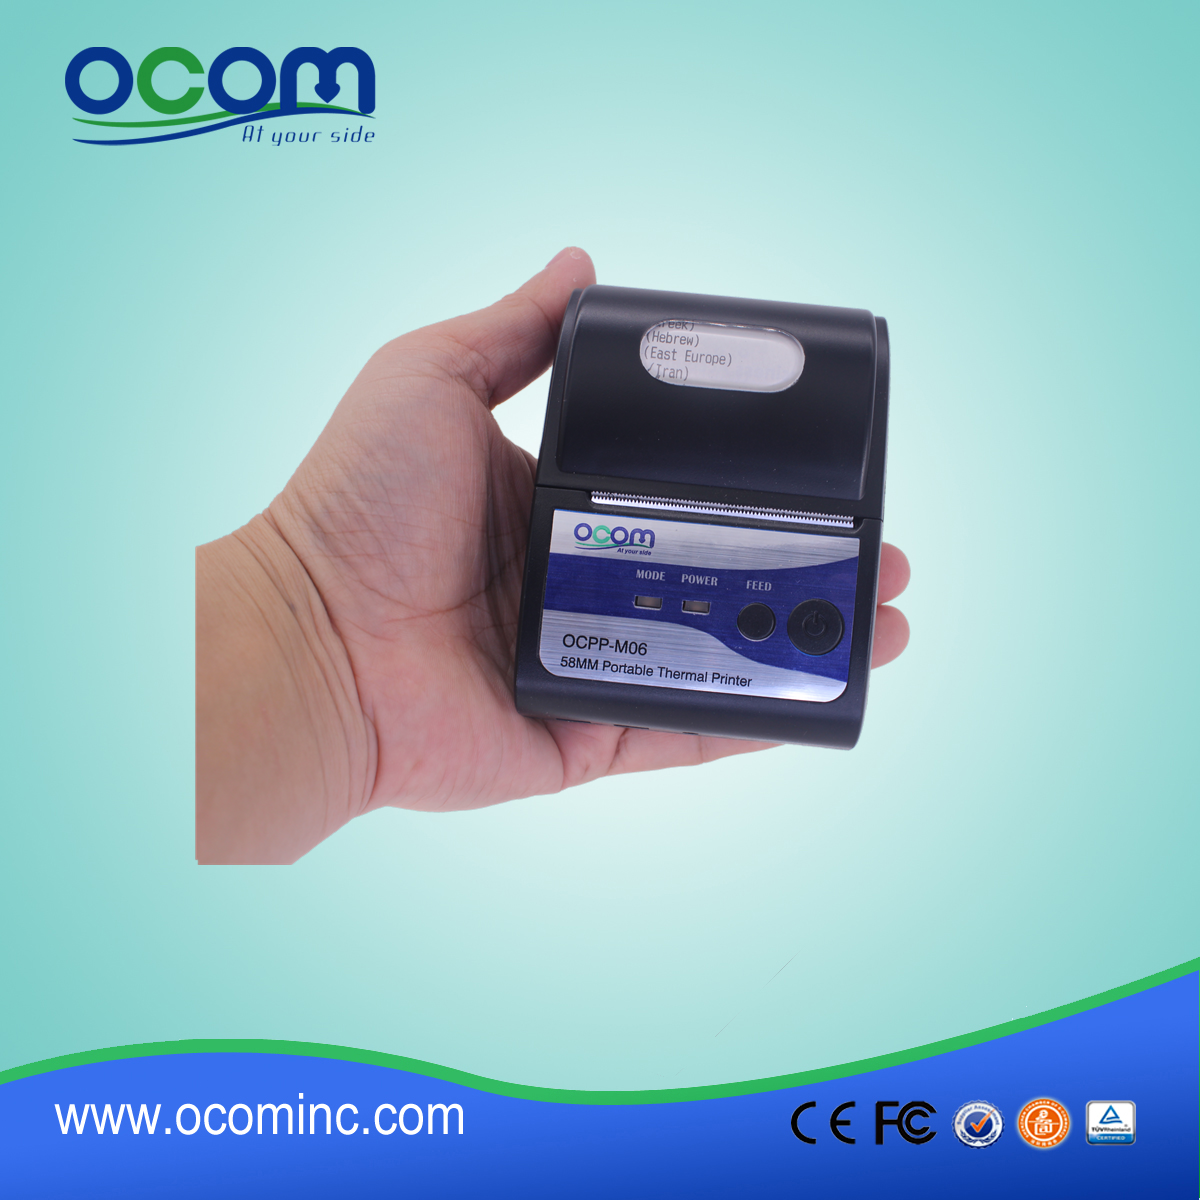 (OCPP-M06) OCOM حار بيع 58mm والناقل التسلسلي العام الطابعة استلام الحرارية